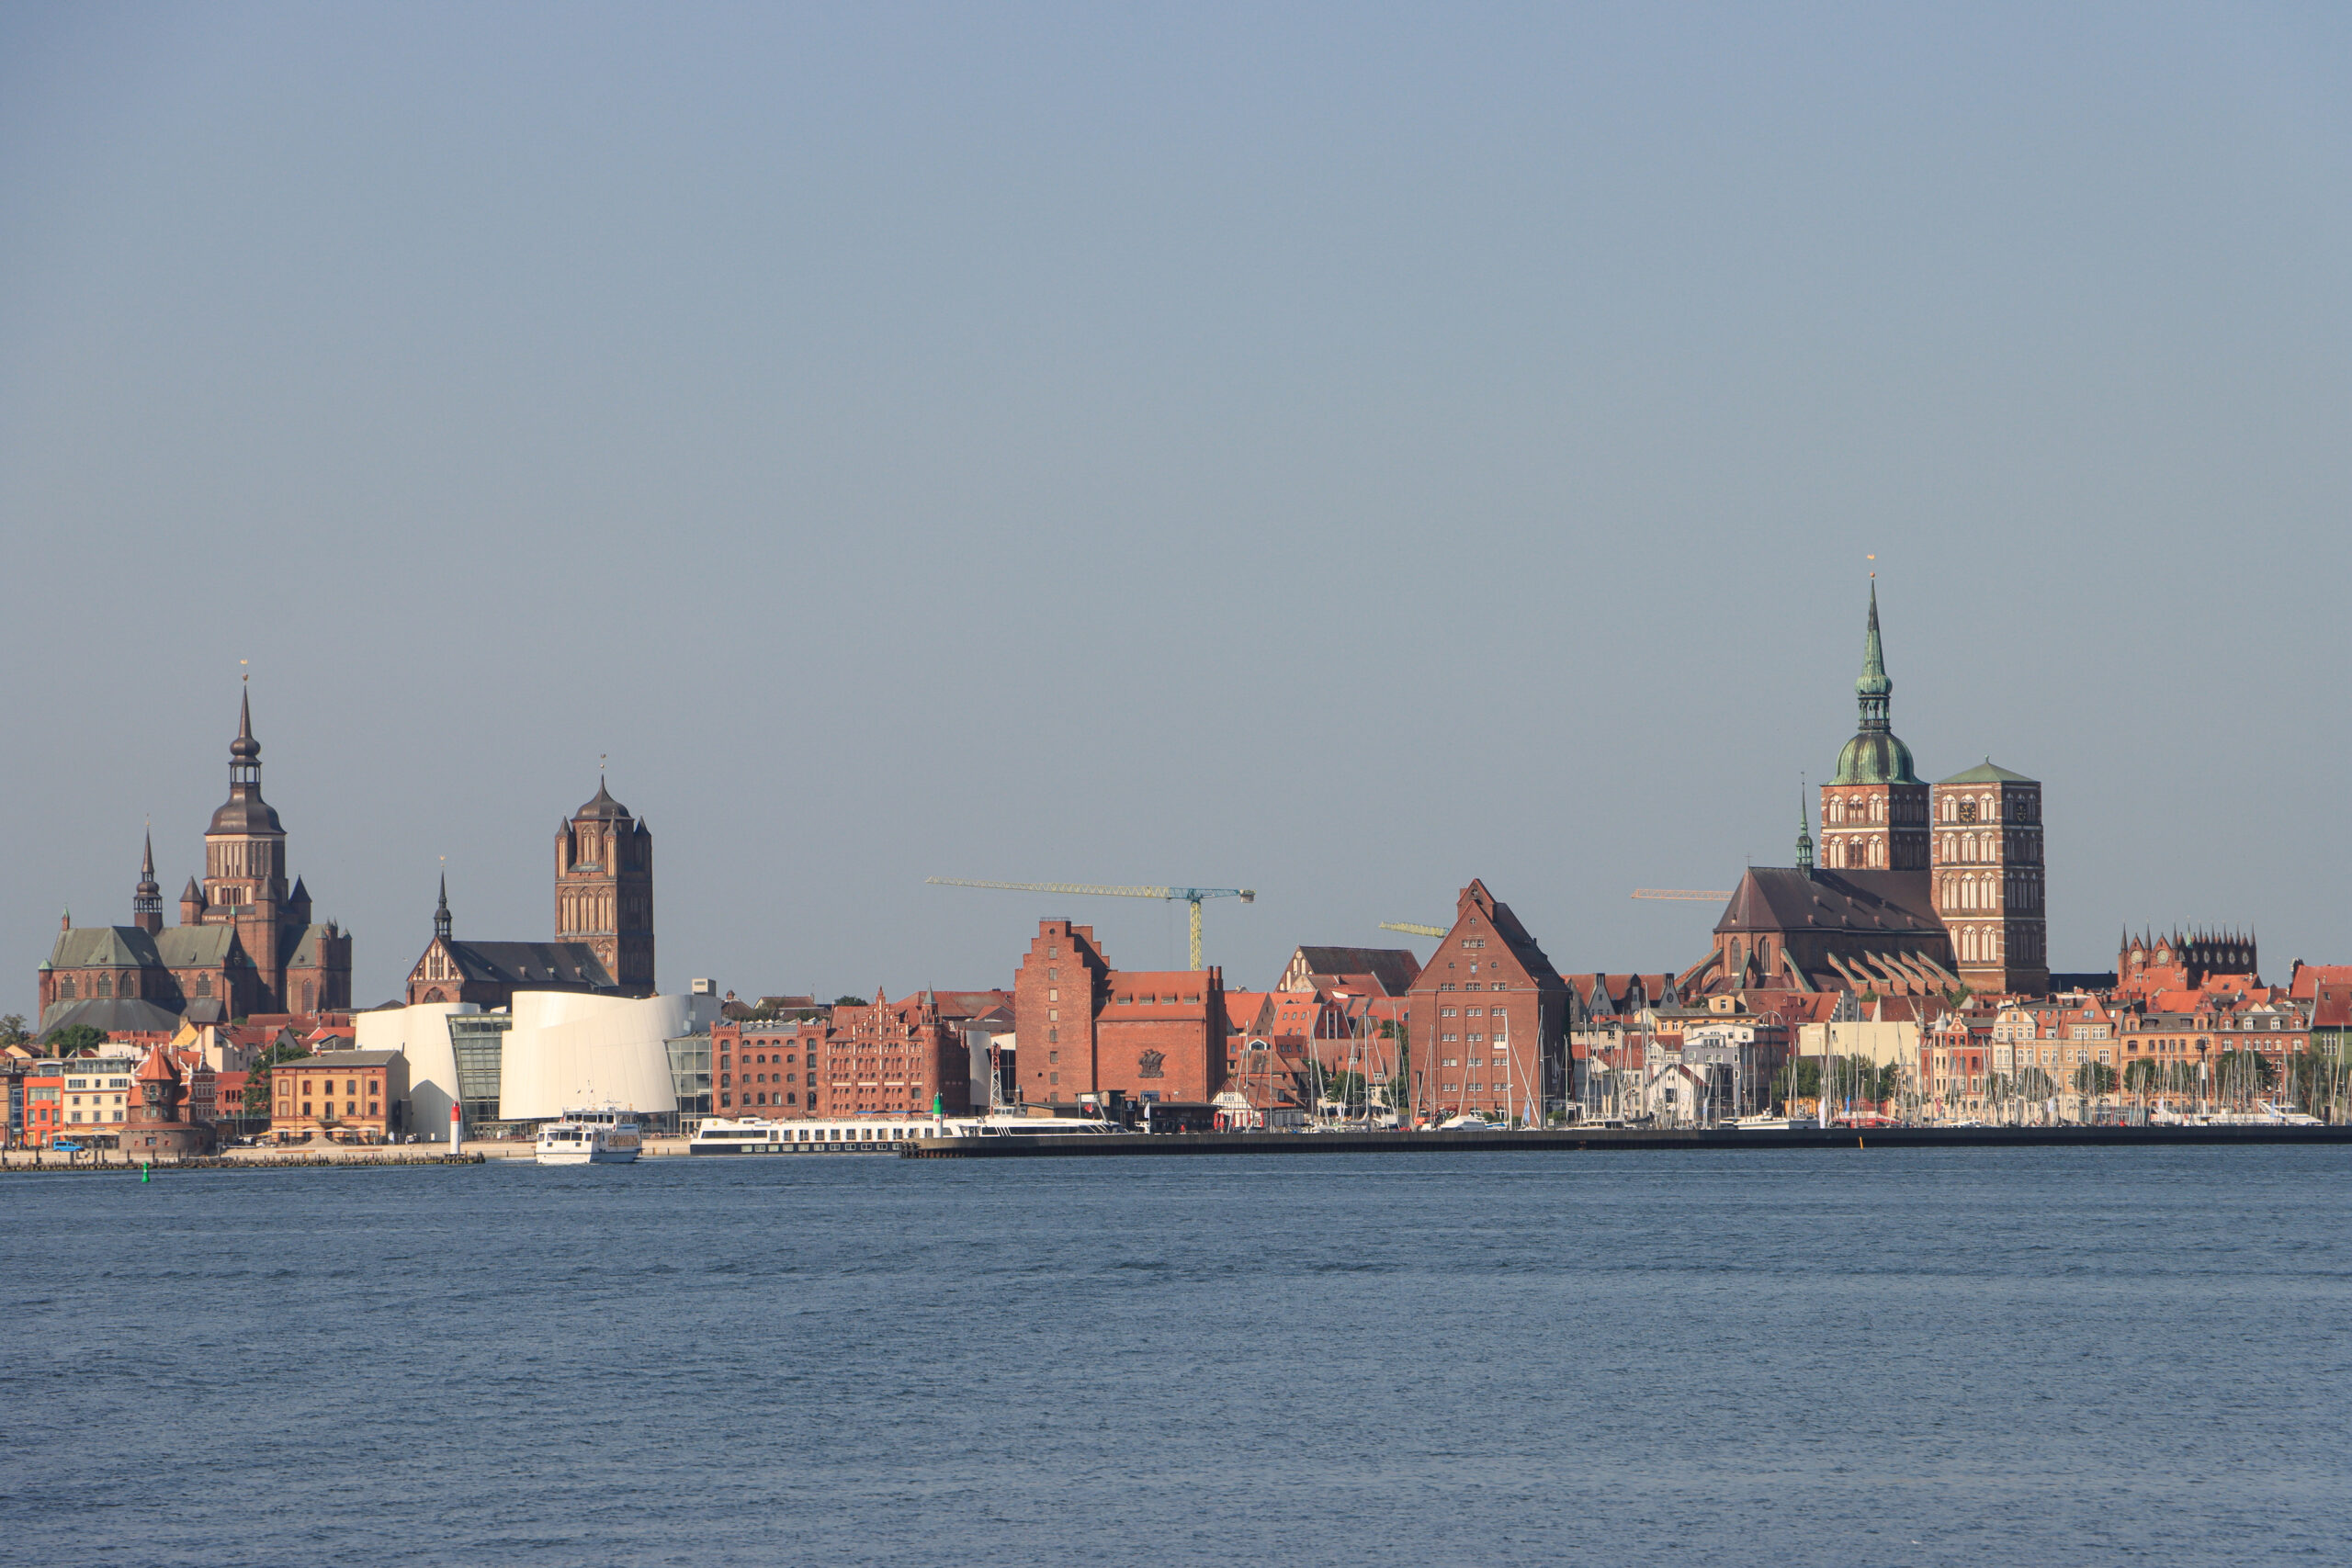 Hanseatische Wasserfront